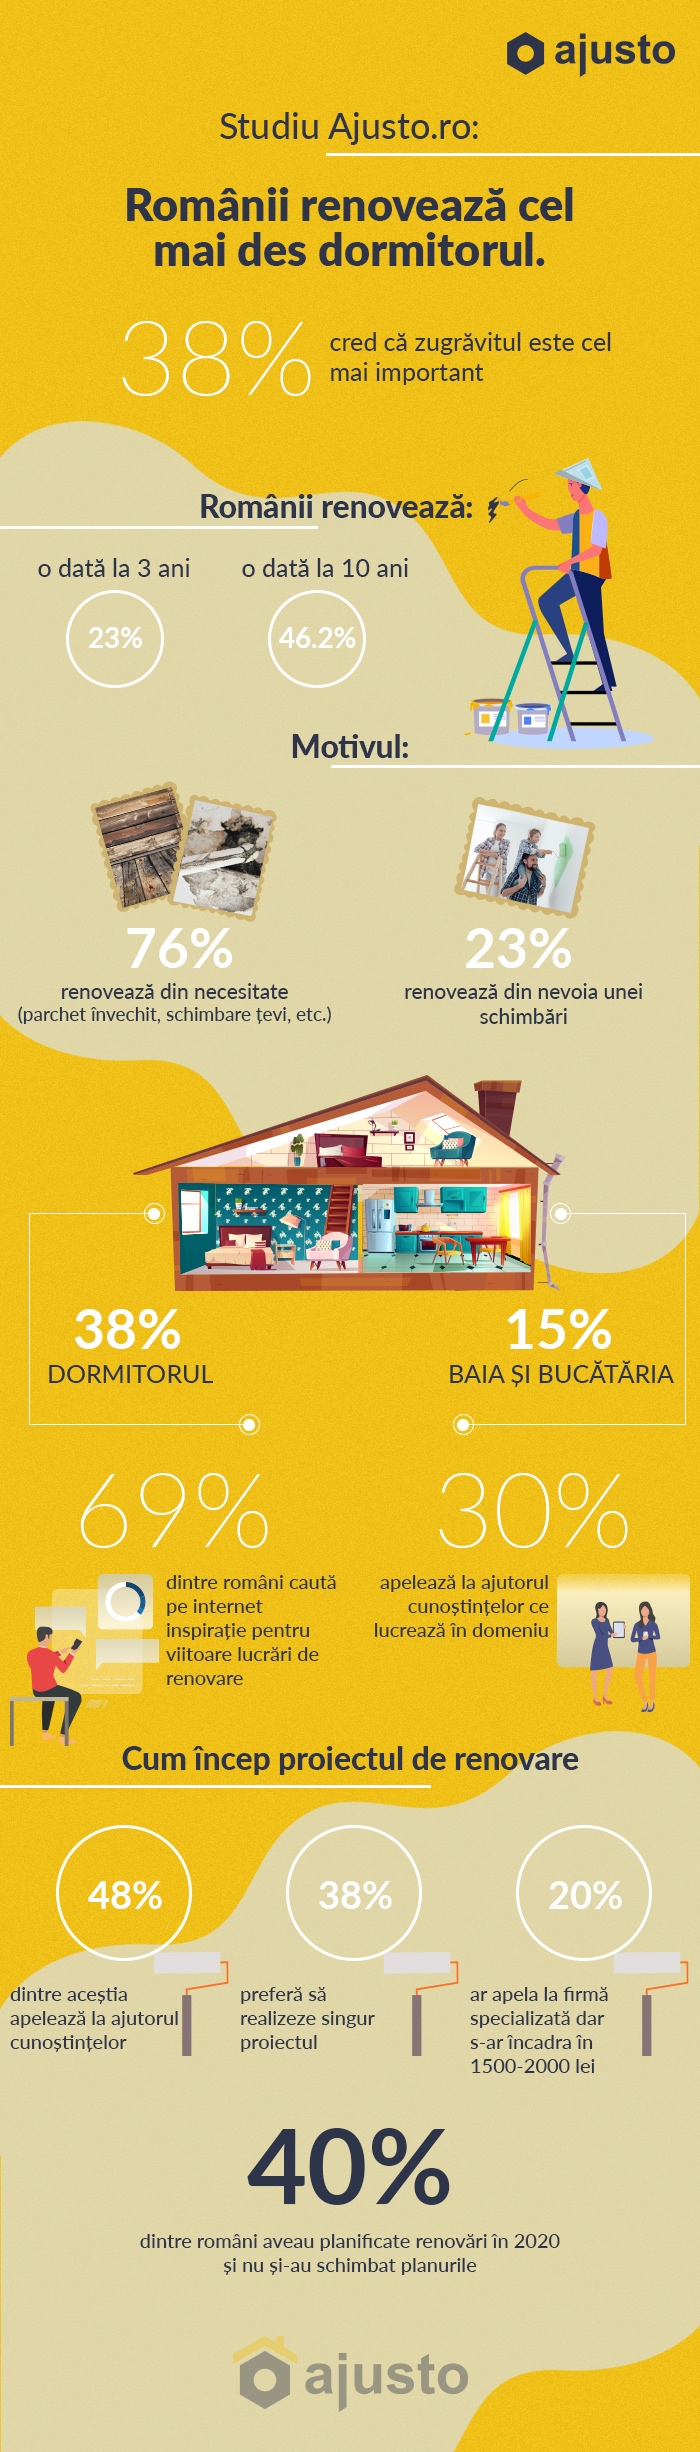 Studiu Ajusto.ro: Românii renovează cel mai des dormitorul